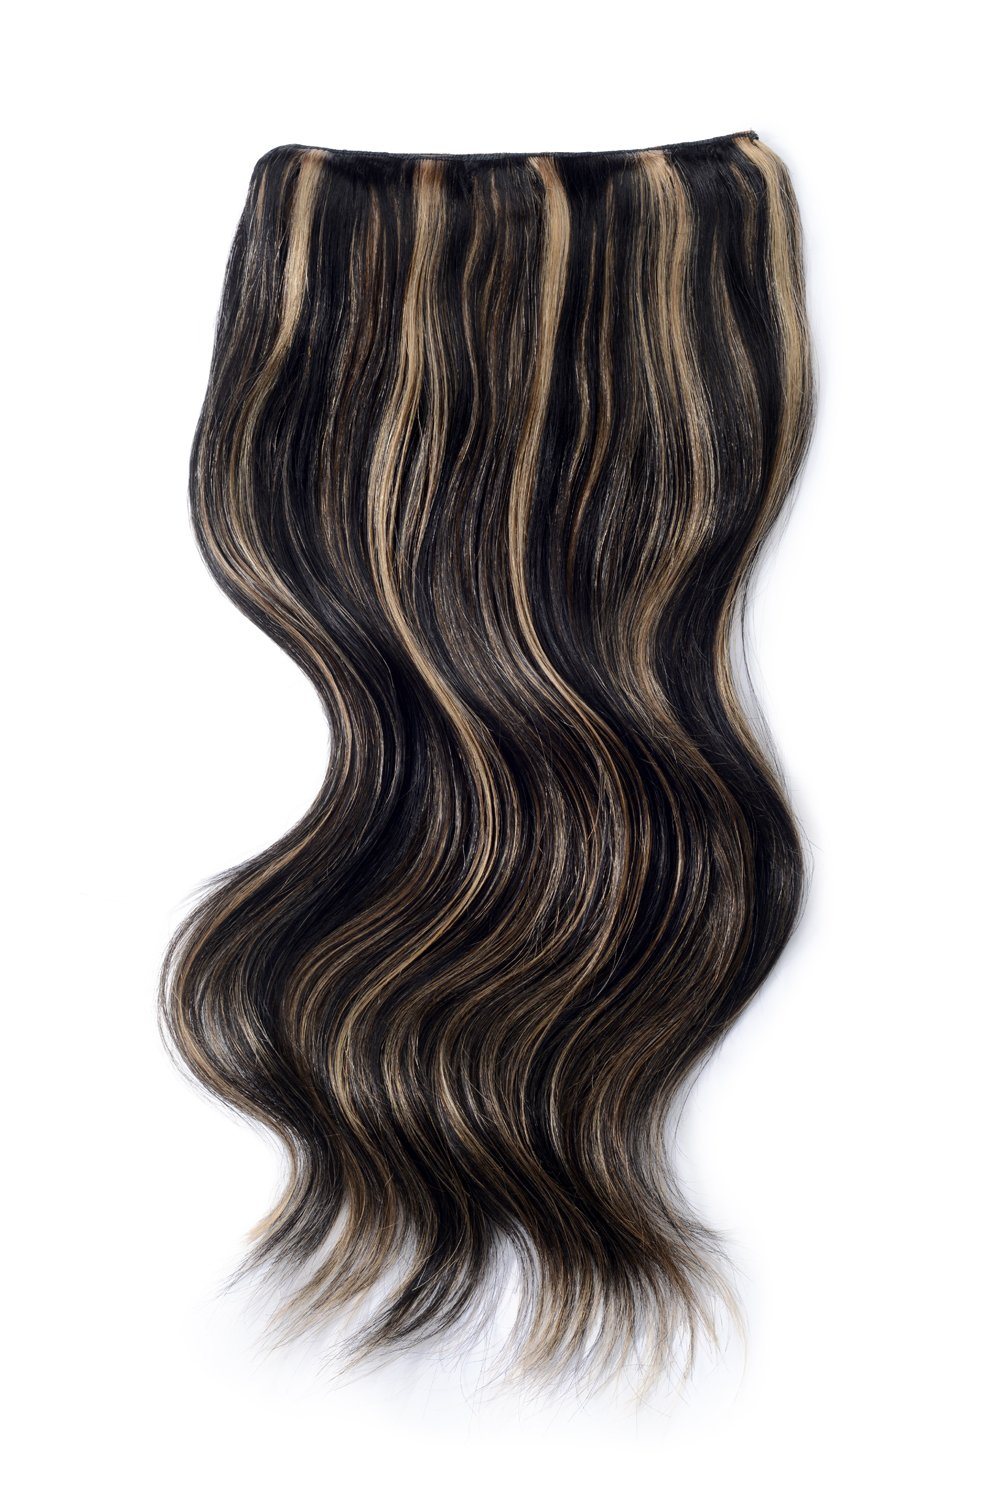 Natural Black Bleach Blonde Mix Hair Extensions 1b 613 Clip